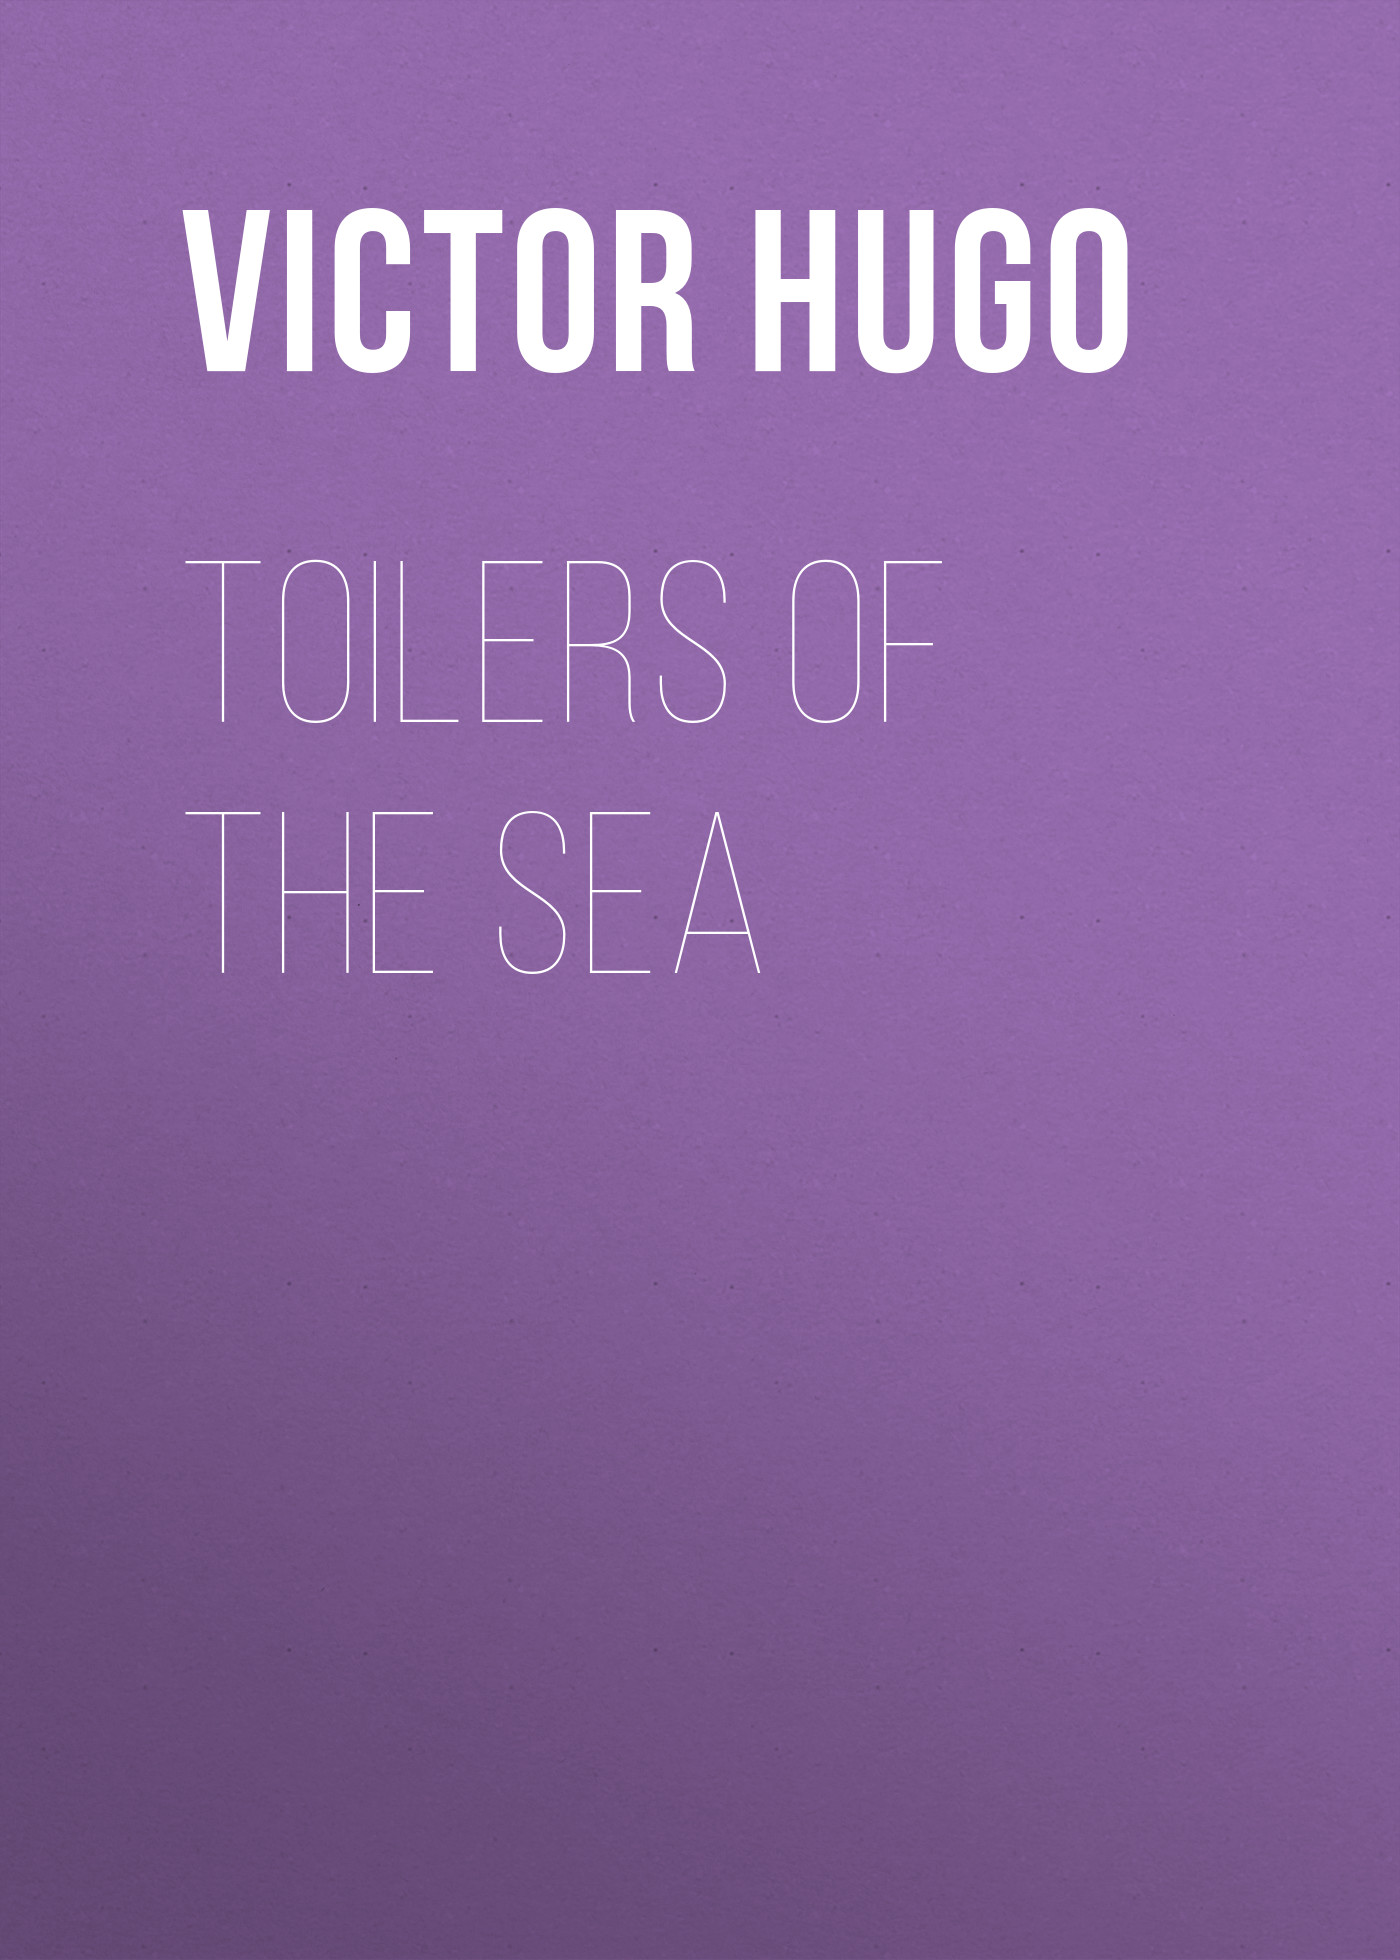 Книга Toilers of the Sea из серии , созданная Victor Hugo, может относится к жанру Литература 19 века, Зарубежная старинная литература, Зарубежная классика. Стоимость электронной книги Toilers of the Sea с идентификатором 25229364 составляет 0 руб.